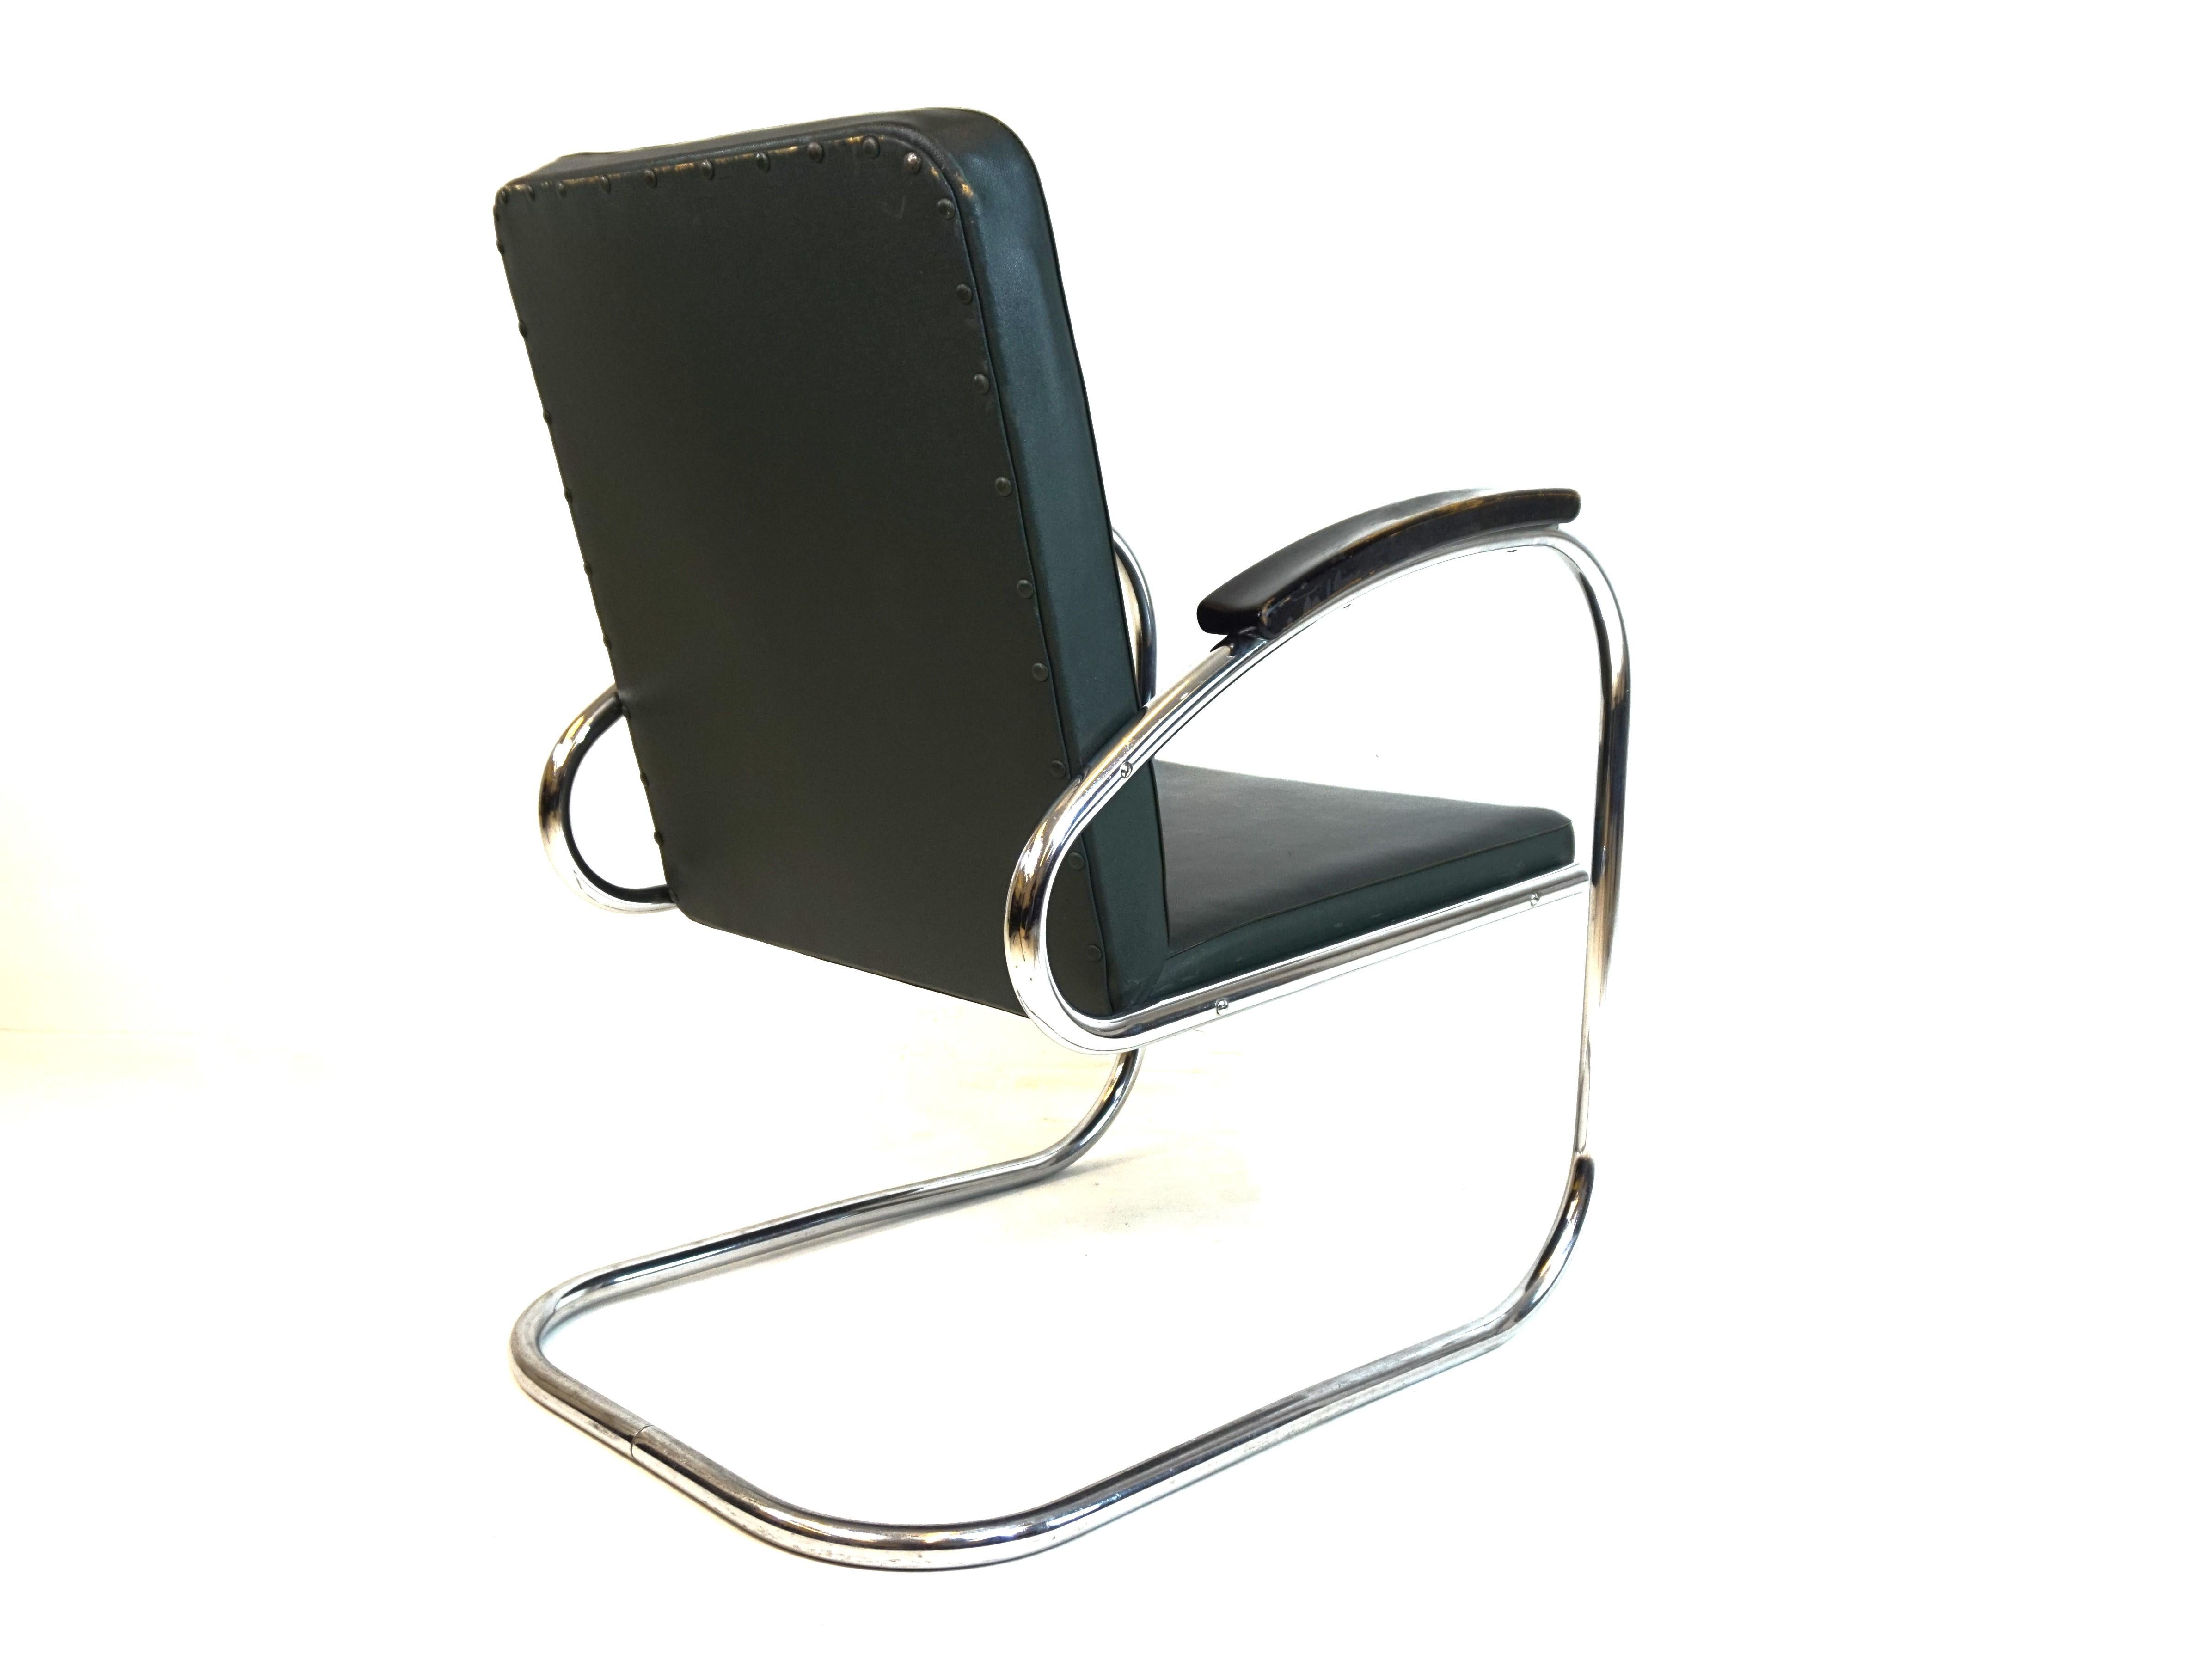 Cette chaise longue RS7 est livrée avec le revêtement en similicuir vert typique de cette époque. Le cuir et le cadre en acier tubulaire sont en parfait état et ne présentent que de légères traces d'usure. Les accoudoirs en bois sont peints en noir